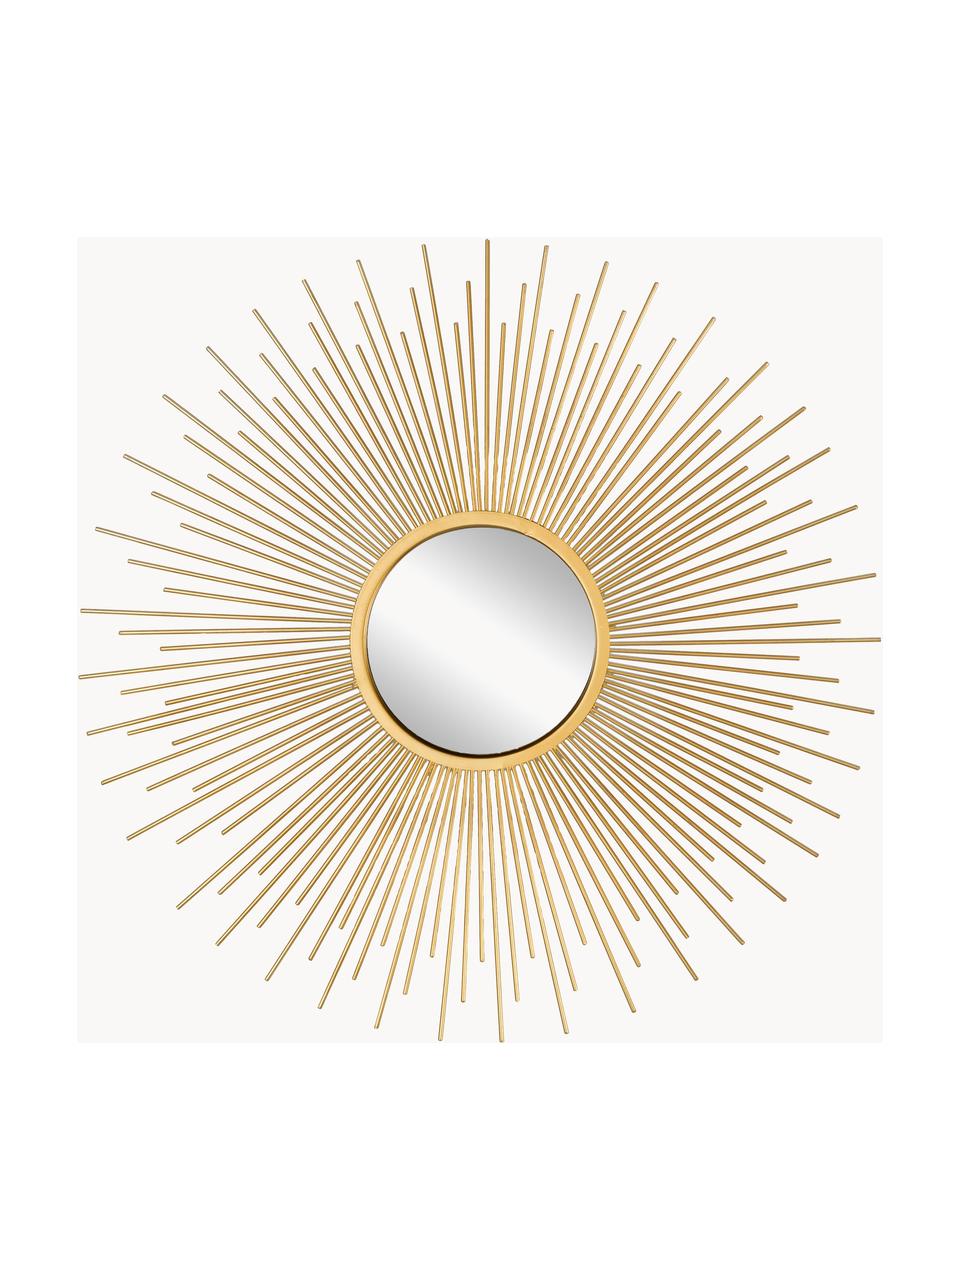 Dekospiegel Sun, 3er-Set, Rahmen: Metall, beschichtet, Spiegelfläche: Spiegelglas, Goldfarben, Set mit verschiedenen Größen